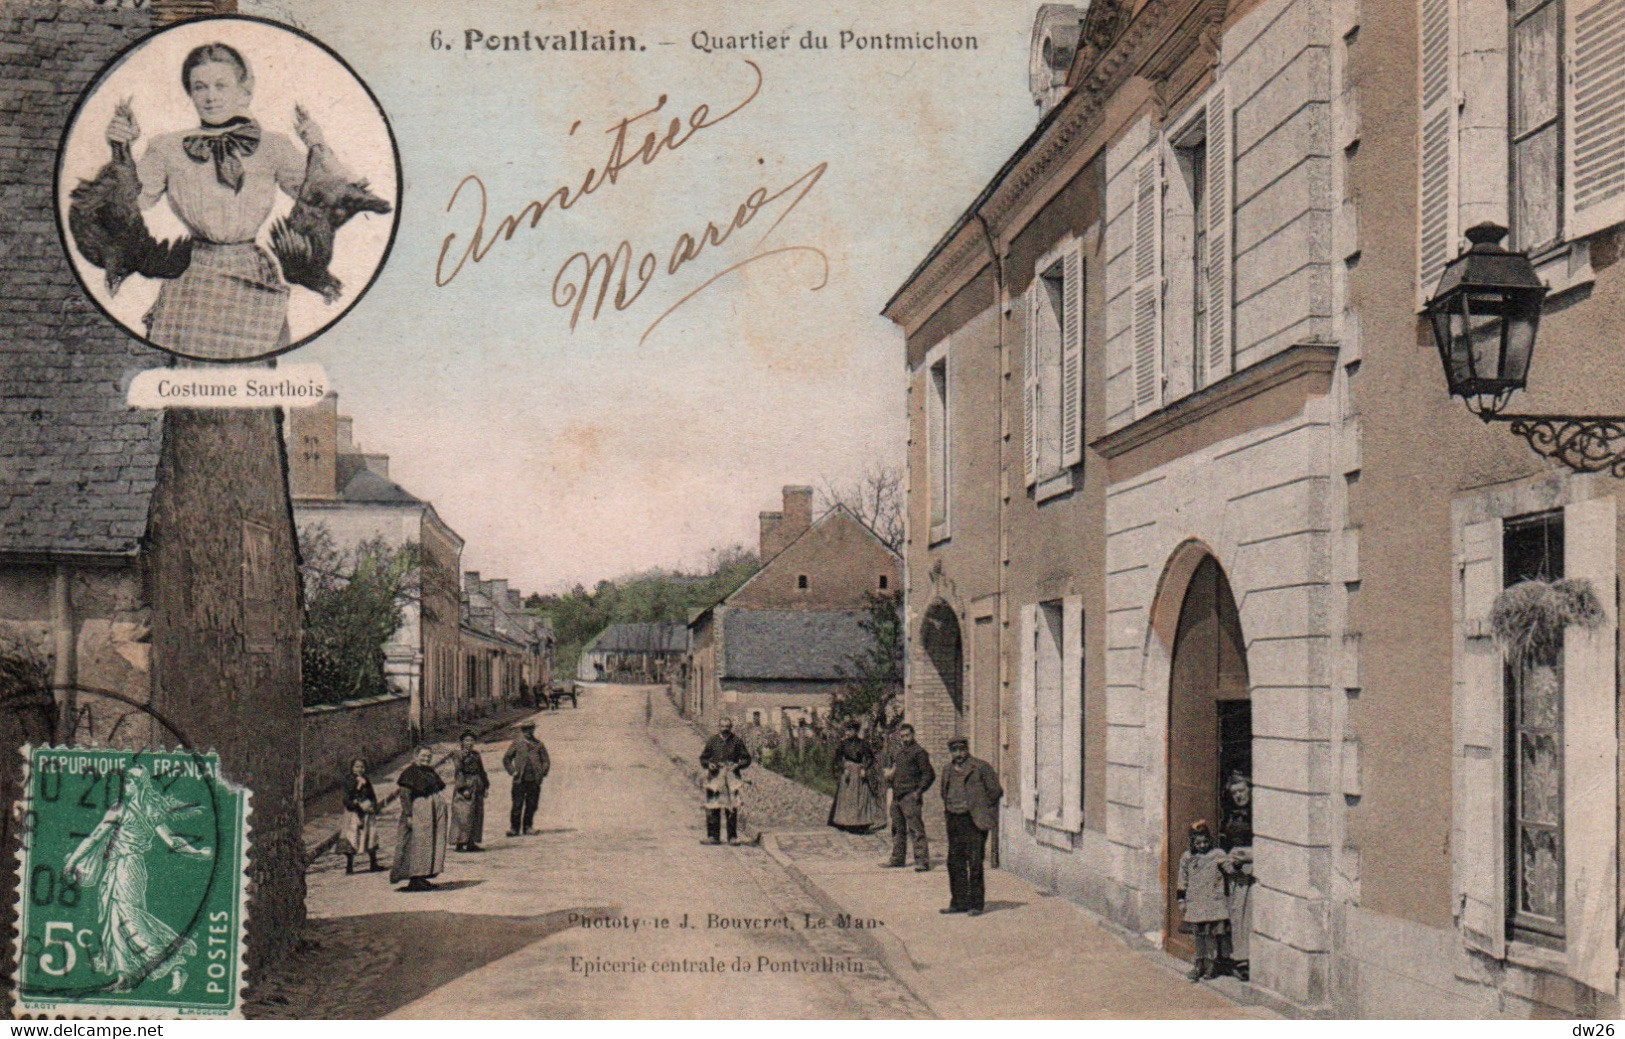 Pontvallain (Sarthe) Quartier Du Pontmichon, Costume Sarthois En Médaillon - Edition Bouveret - Carte Colorisée N° 6 - Pontvallain